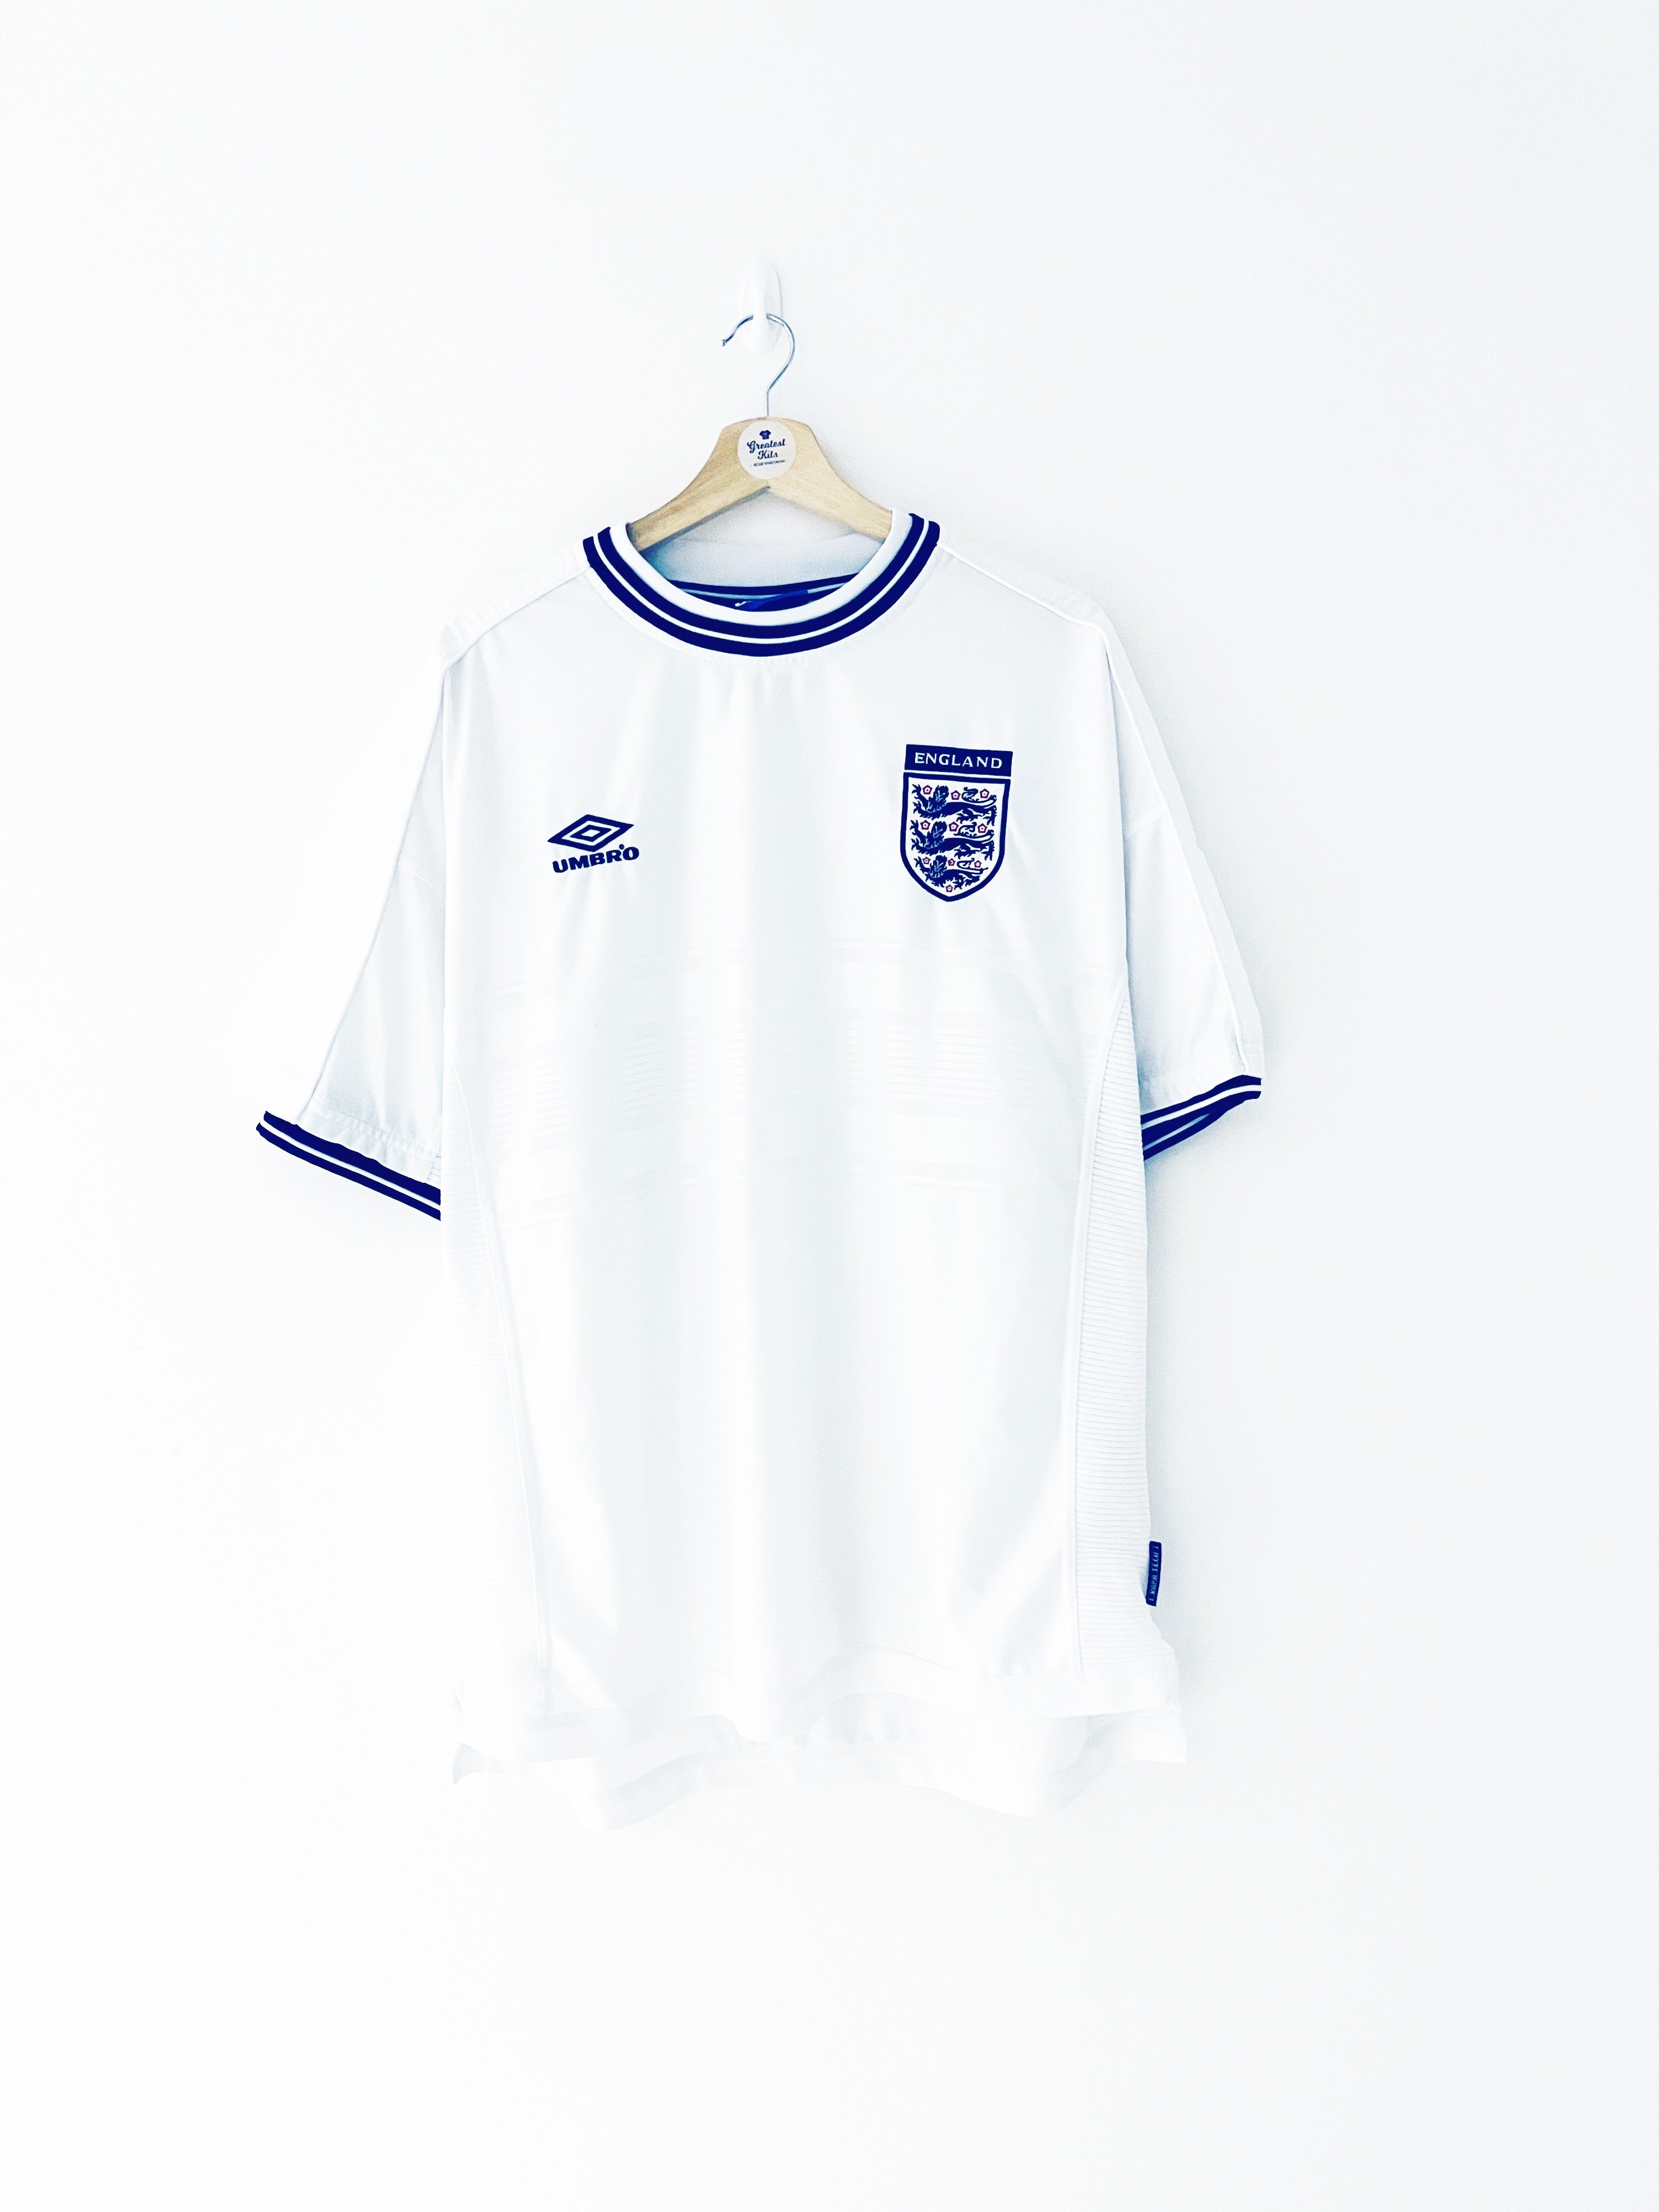 1999/01 England Home Shirt (XXL) 9/10